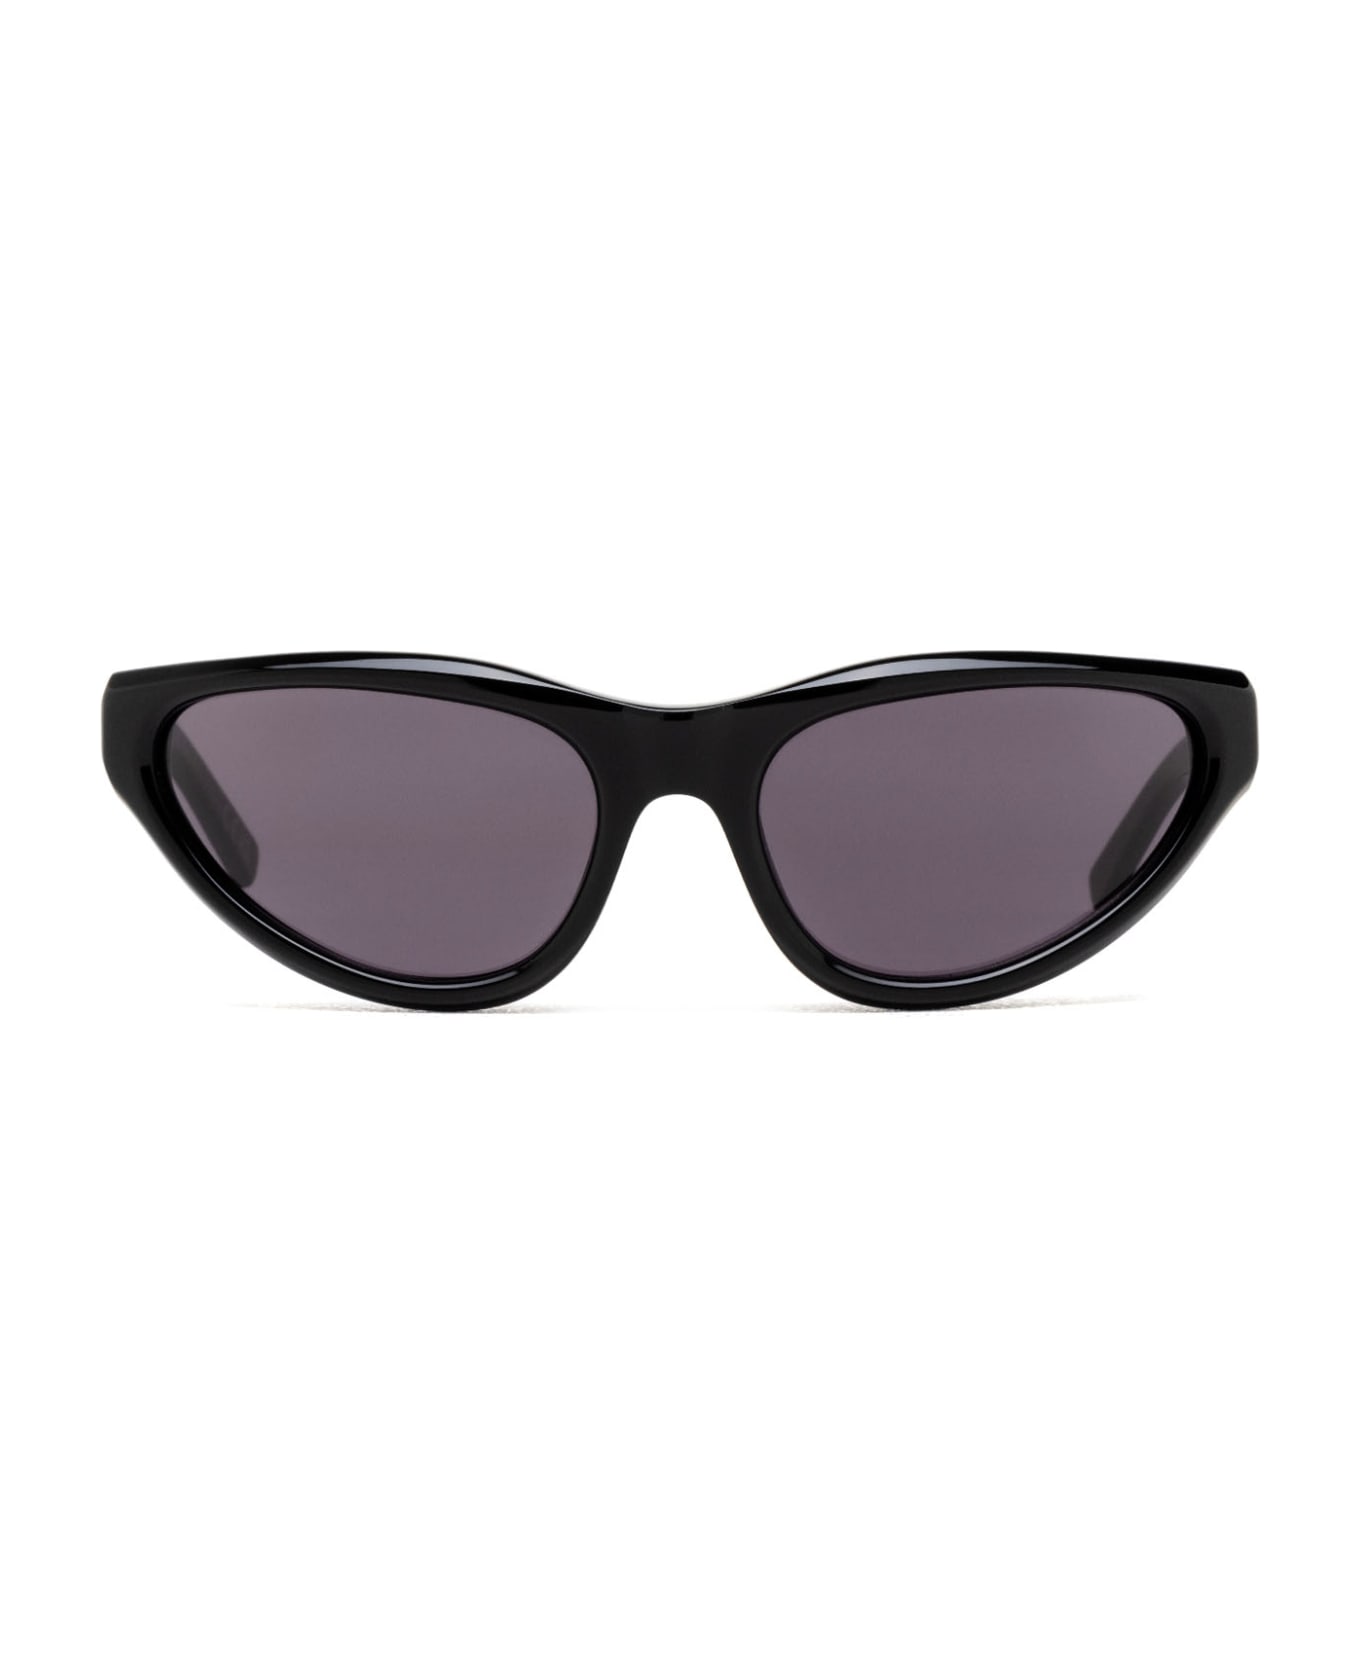 Marni Eyewear Mavericks Black Sunglasses - Black サングラス